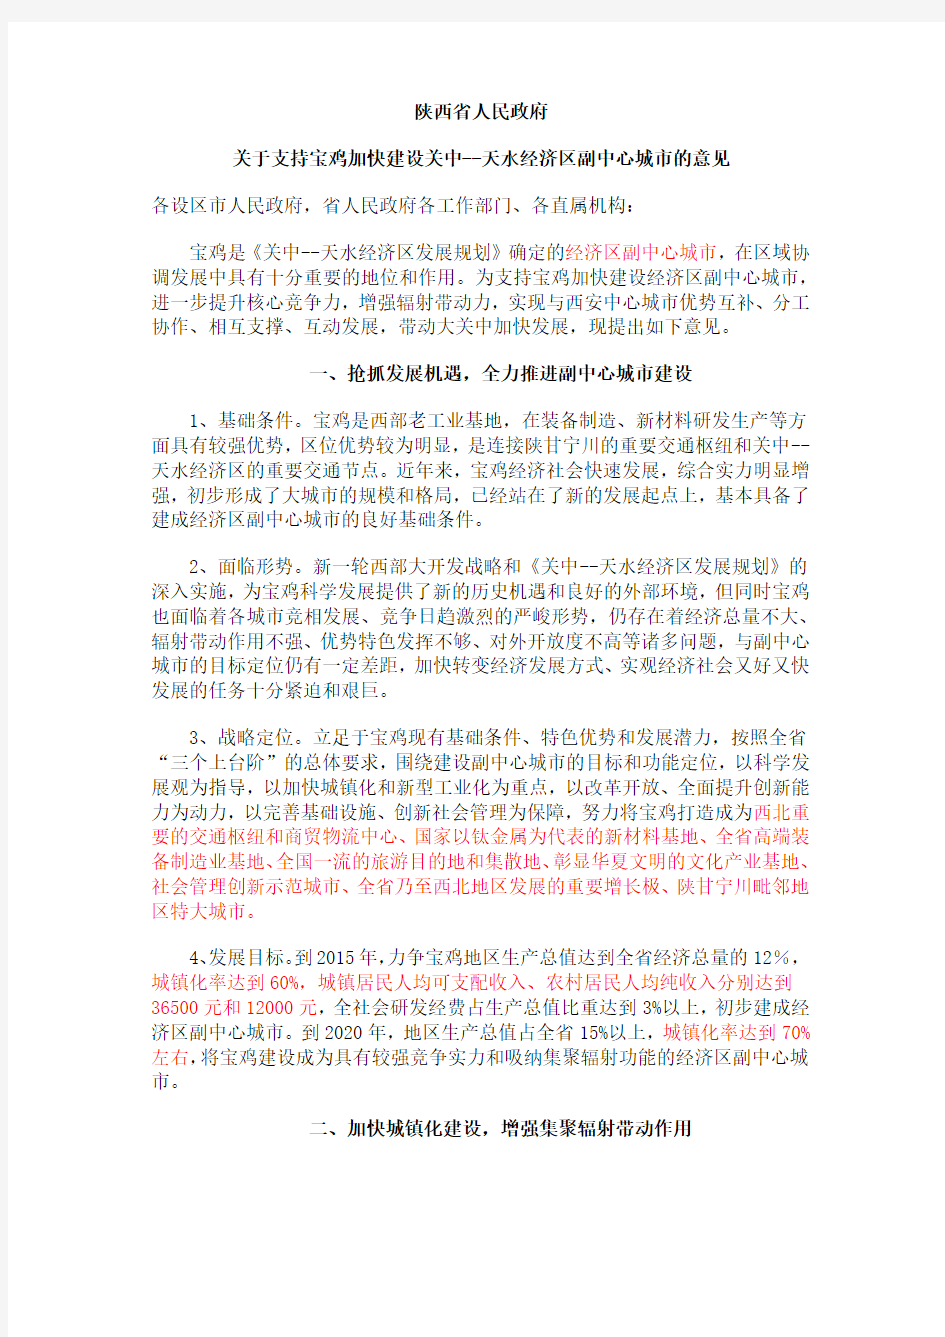 陕西省政府关于支持宝鸡建设经济区副中心城市的意见